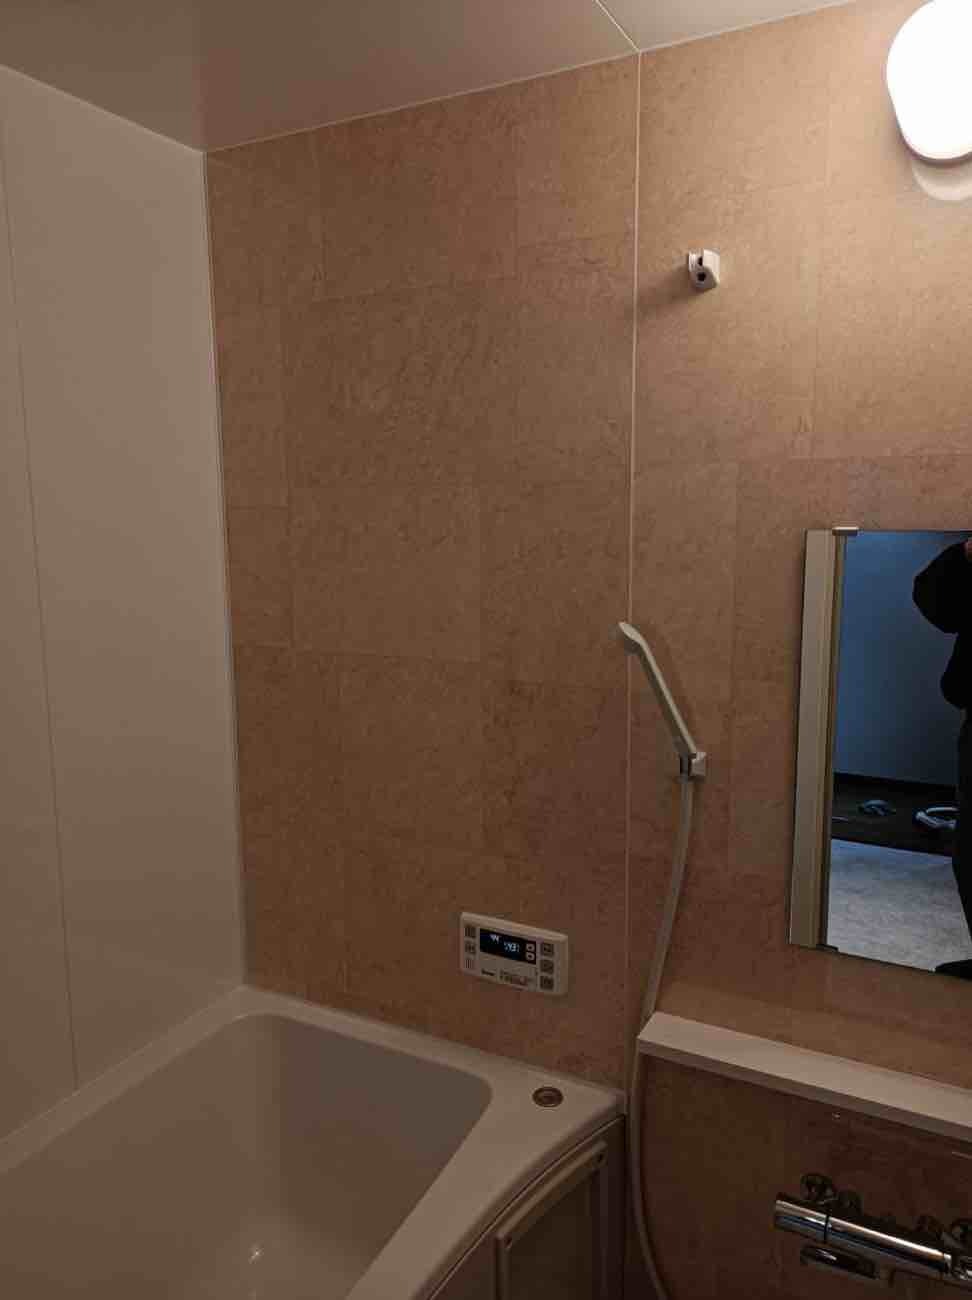 【埼玉県吉川市】M様邸浴室ユニットバス交換工事を行いました。LIXILリクシル リノビオ フィット 画像